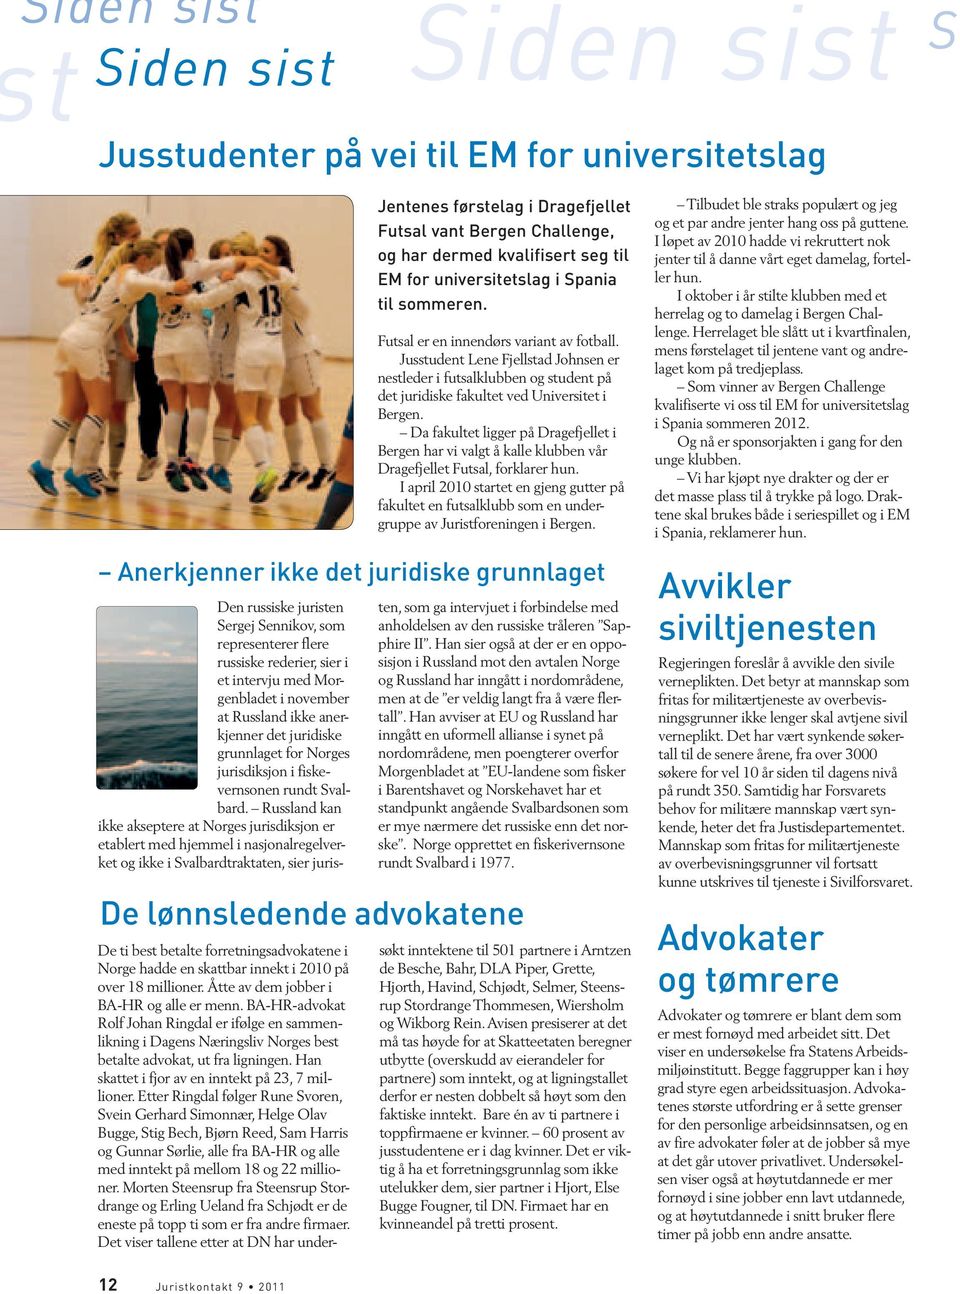 Da fakultet ligger på Dragefjellet i Bergen har vi valgt å kalle klubben vår Dragefjellet Futsal, forklarer hun.